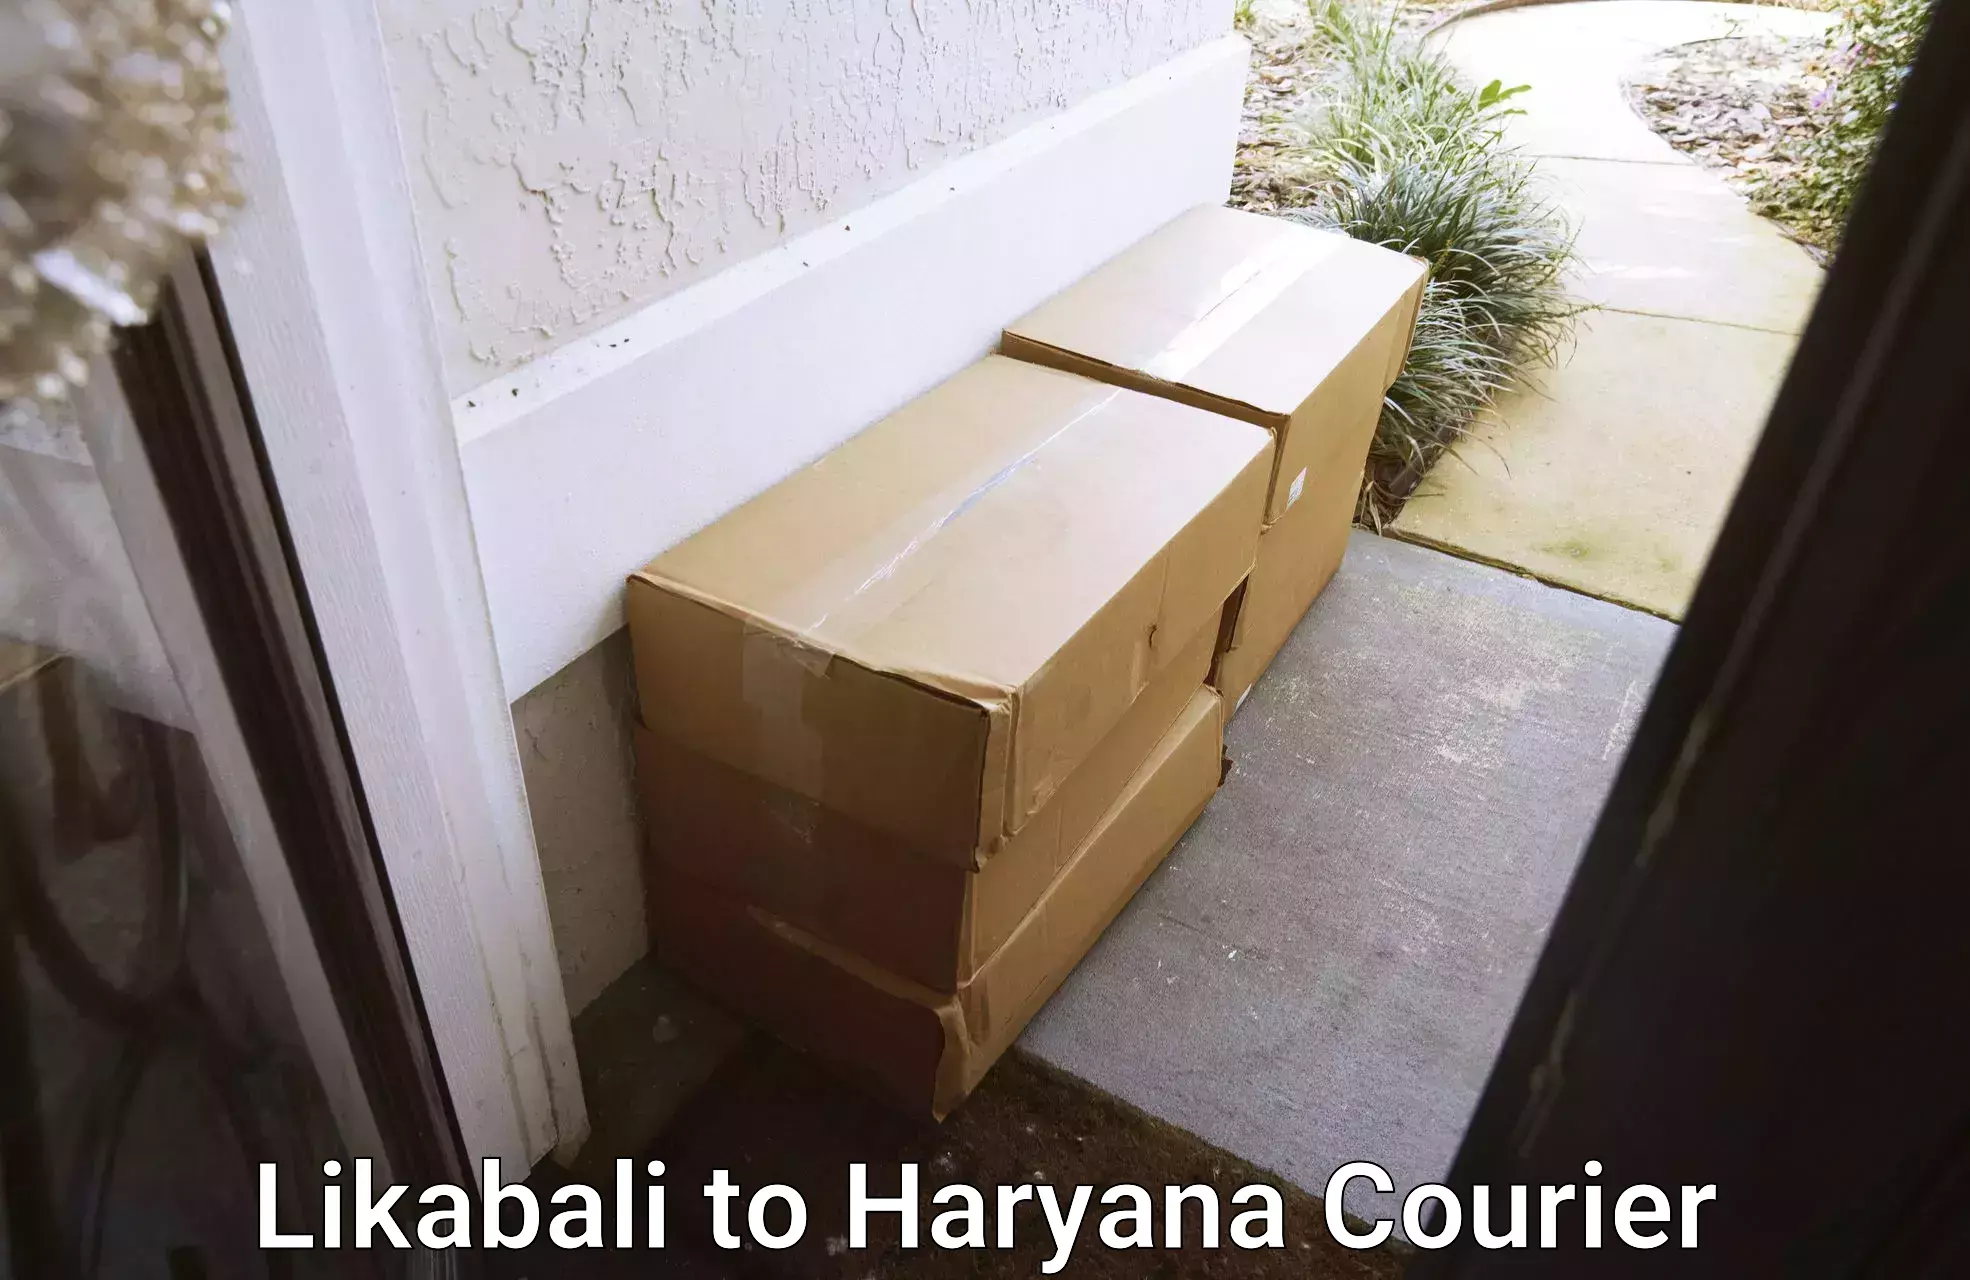 High-capacity parcel service Likabali to Haryana